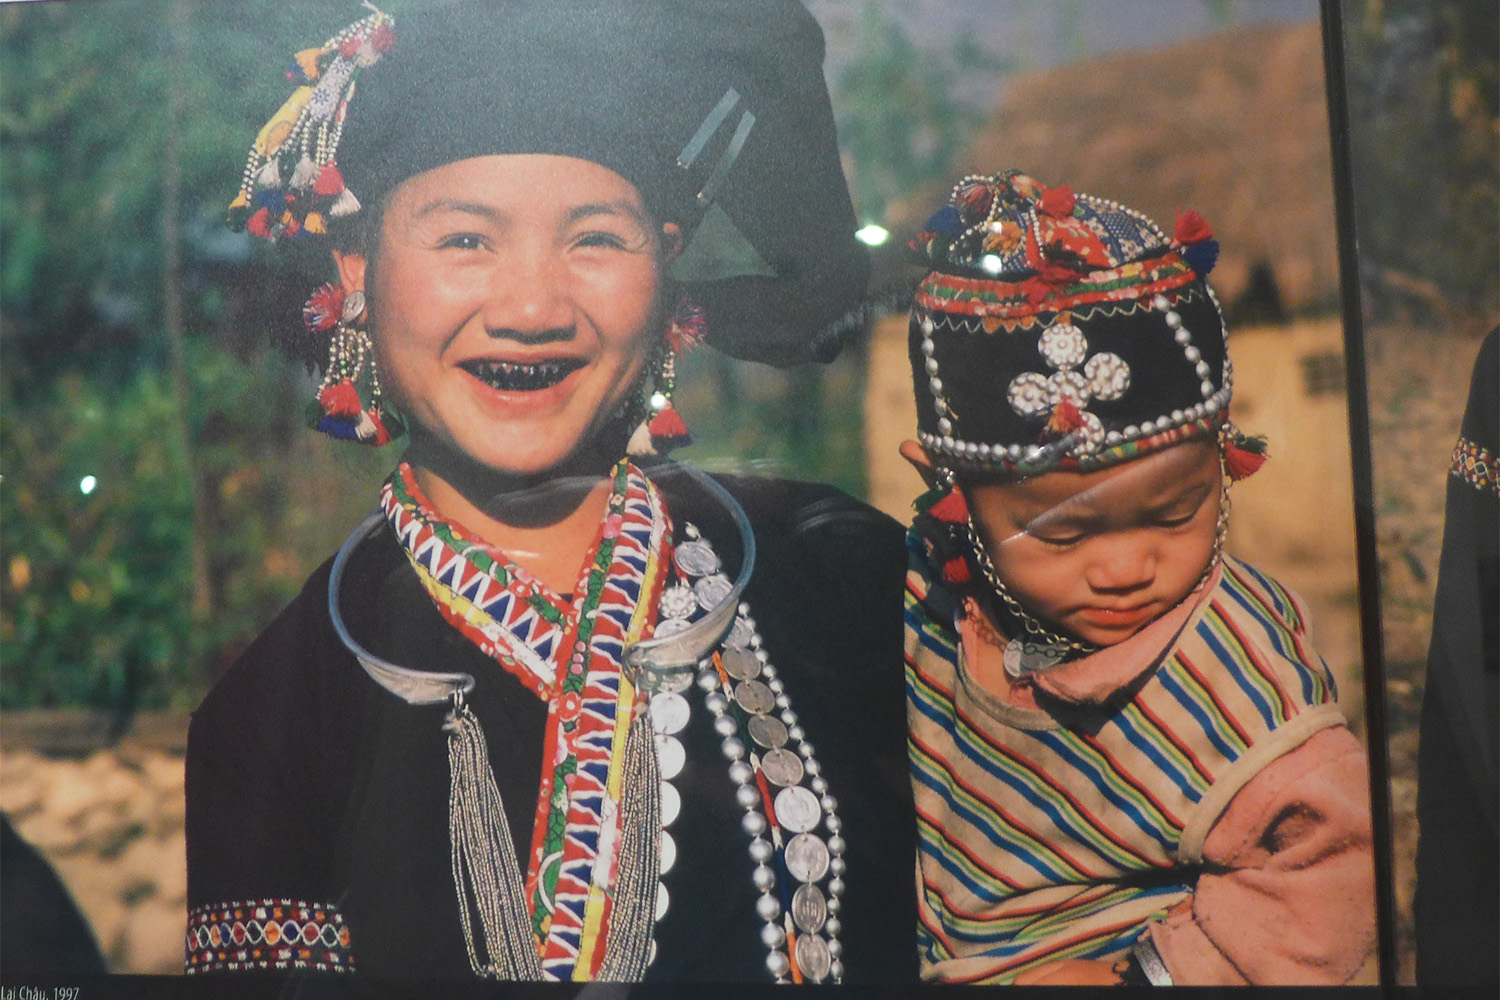 Dans certaines minorités du Vietnam, les femmes ont les dents noires à cause des fruits qu’elles mangent. C’est un signe de fierté ; ces dents noires sont sources de respect.